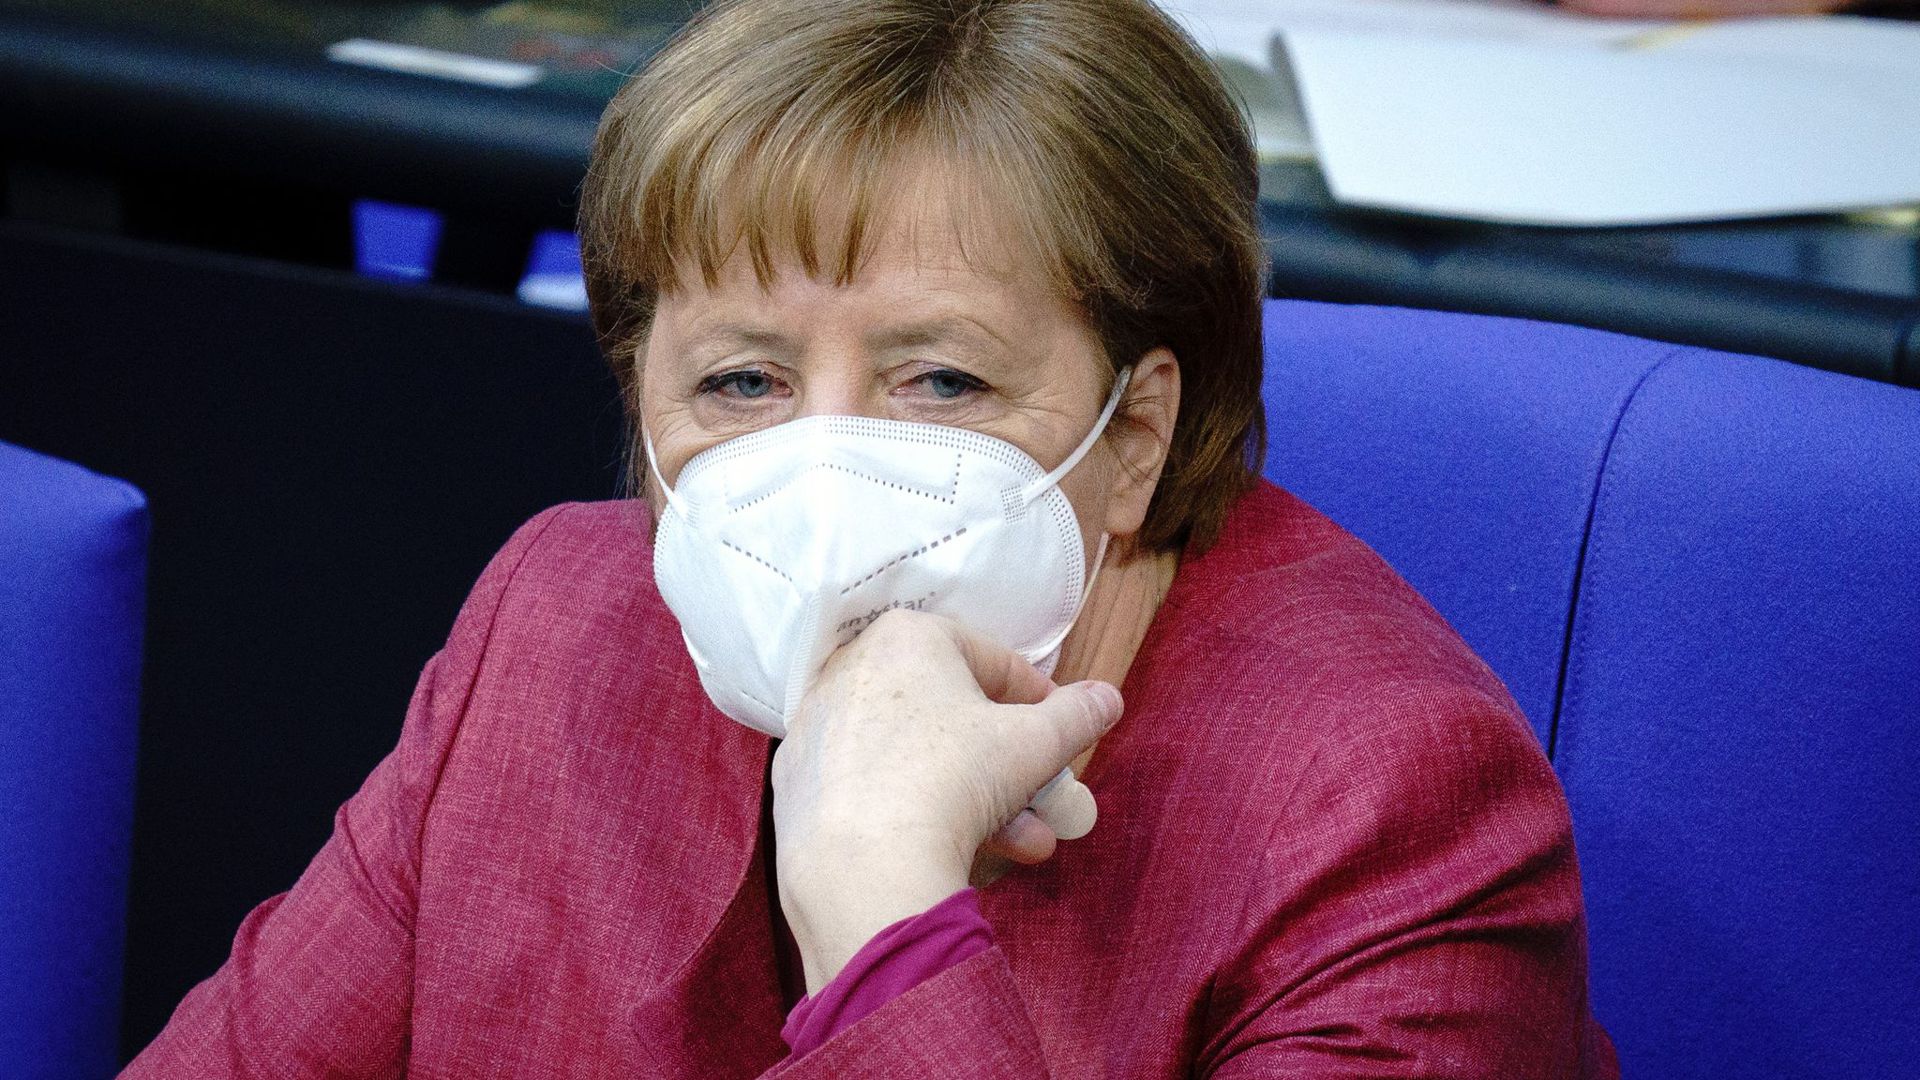 Kanzlerin Angela Merkel ist als Zeugin im Wirecard-Untersuchungsausschuss geladen.